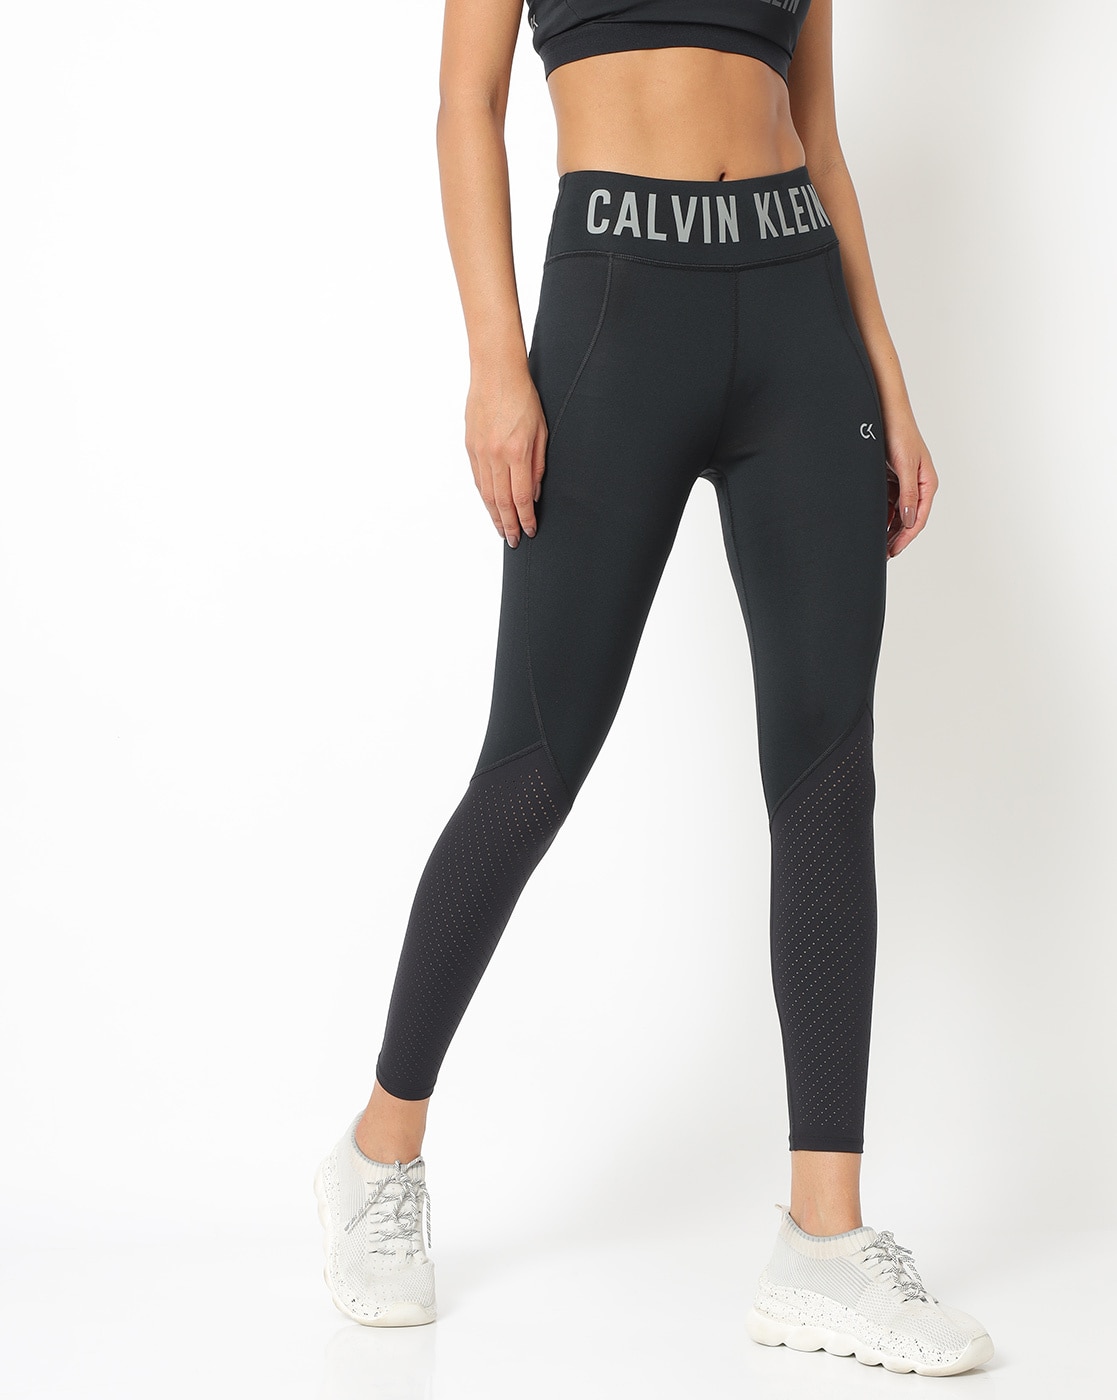 Calvin Klein Adjustable Waist Athletic Leggings for Women